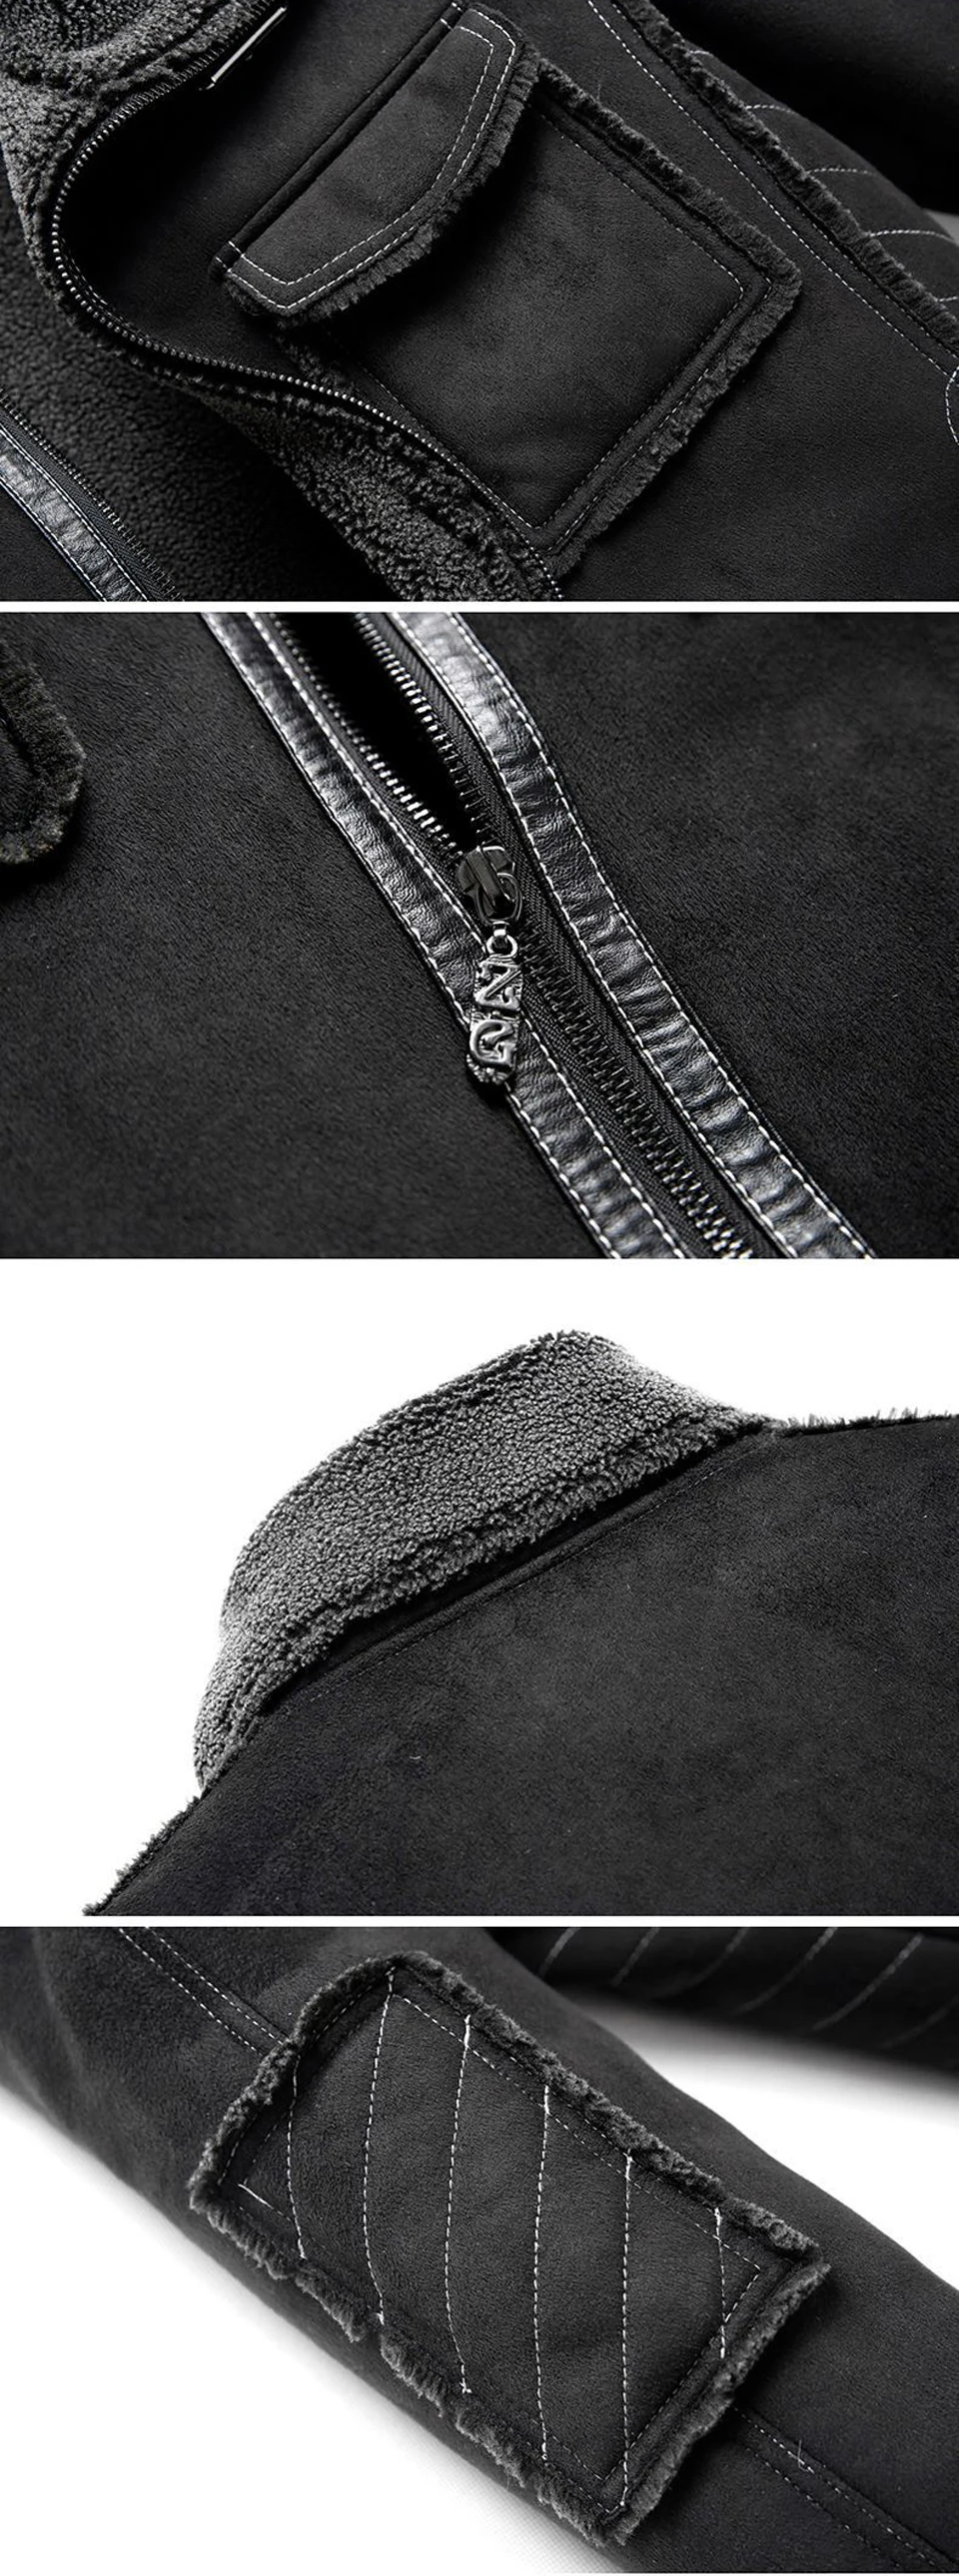 Holyrising мужские меховые куртки ягненка винтажные карманы пальто на молнии мужские шерстяные пальто мягкая мотоциклетная куртка для отдыха 18948-5